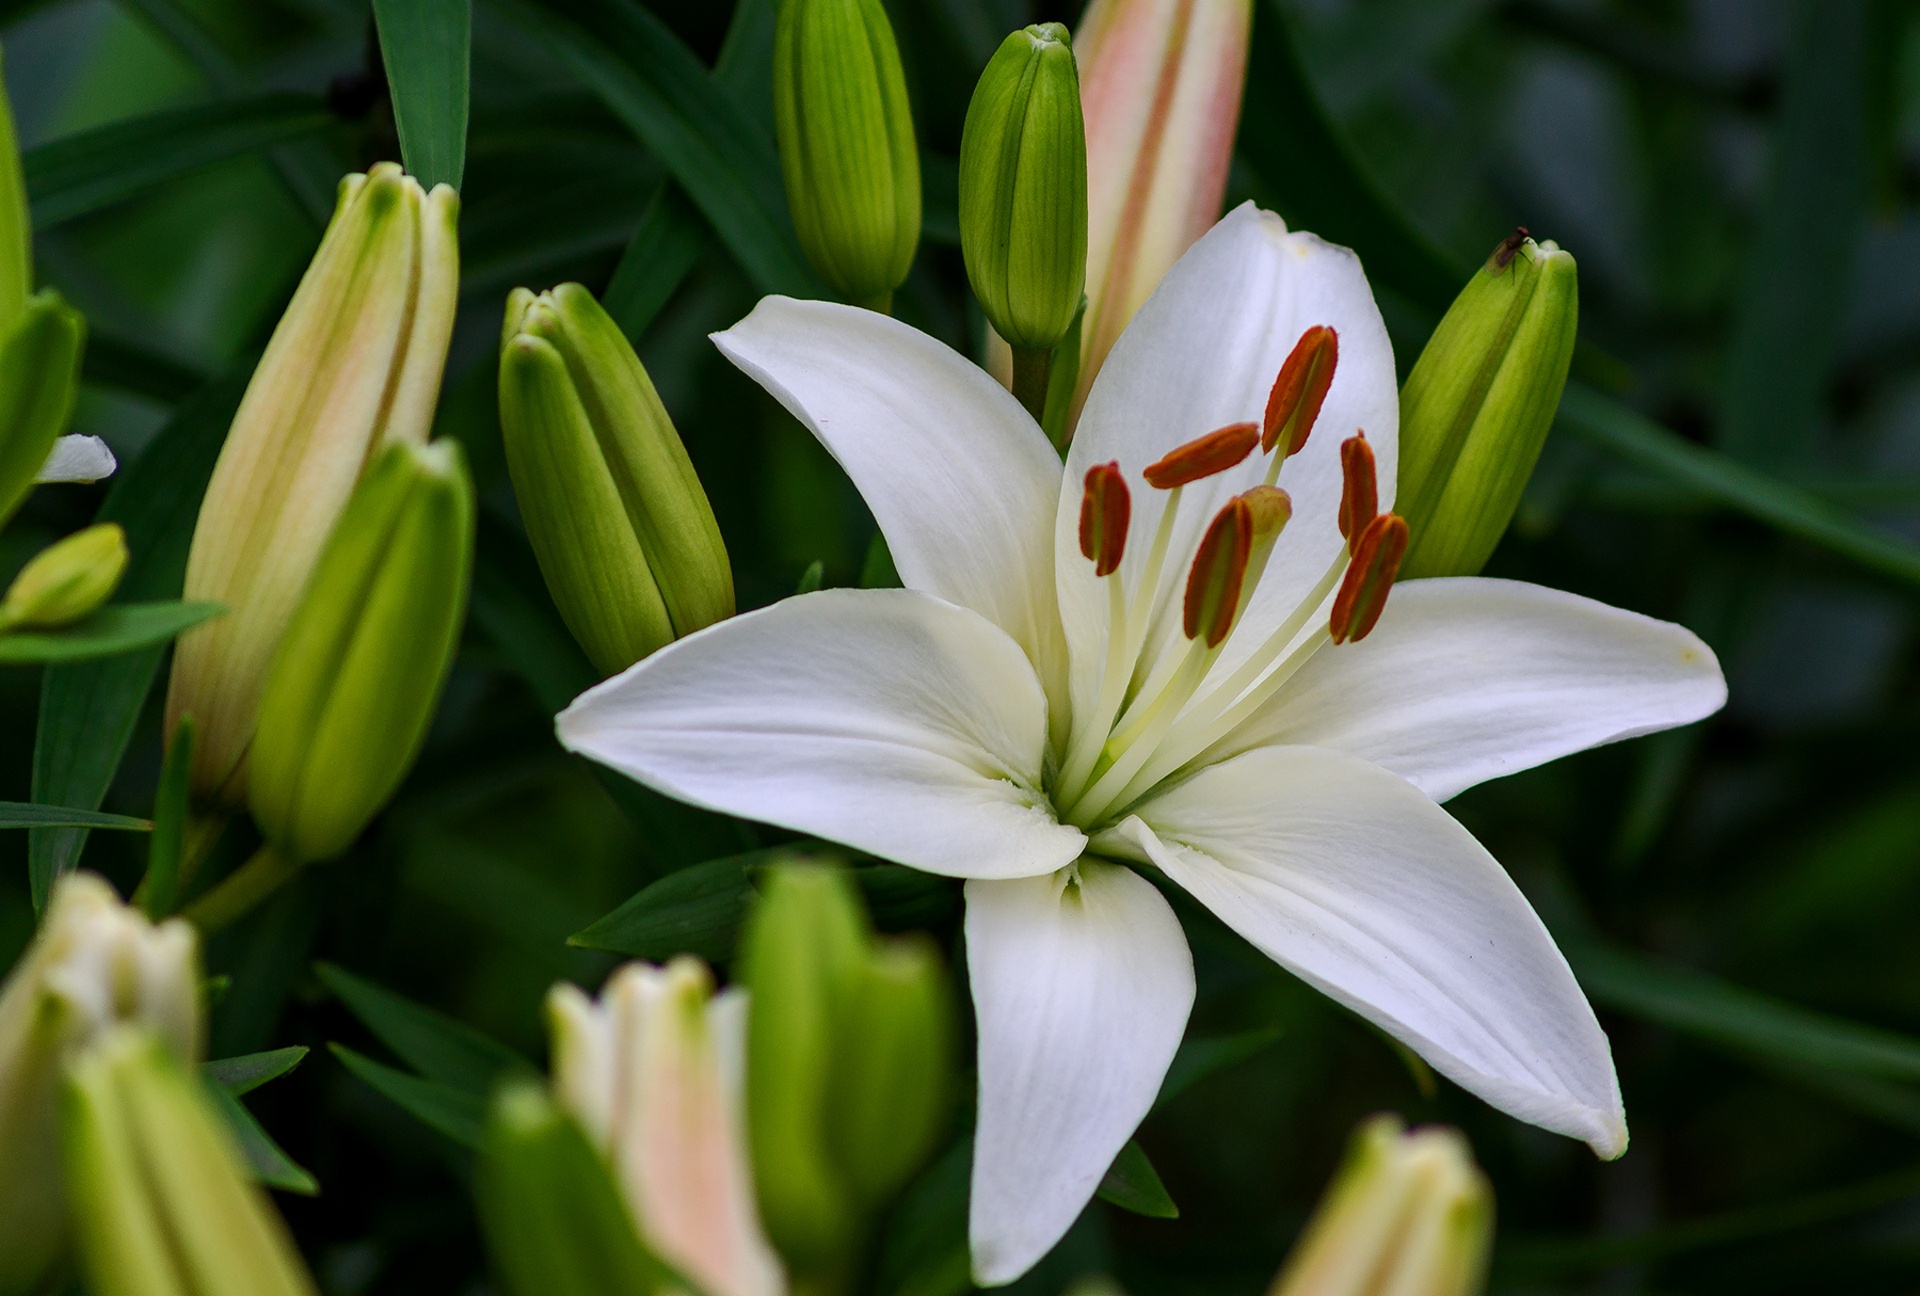 Lilie: nawóz górny zapewniający bujne kwitnienie, przy sadzeniu cebul, w czerwcu w okresie pączkowania